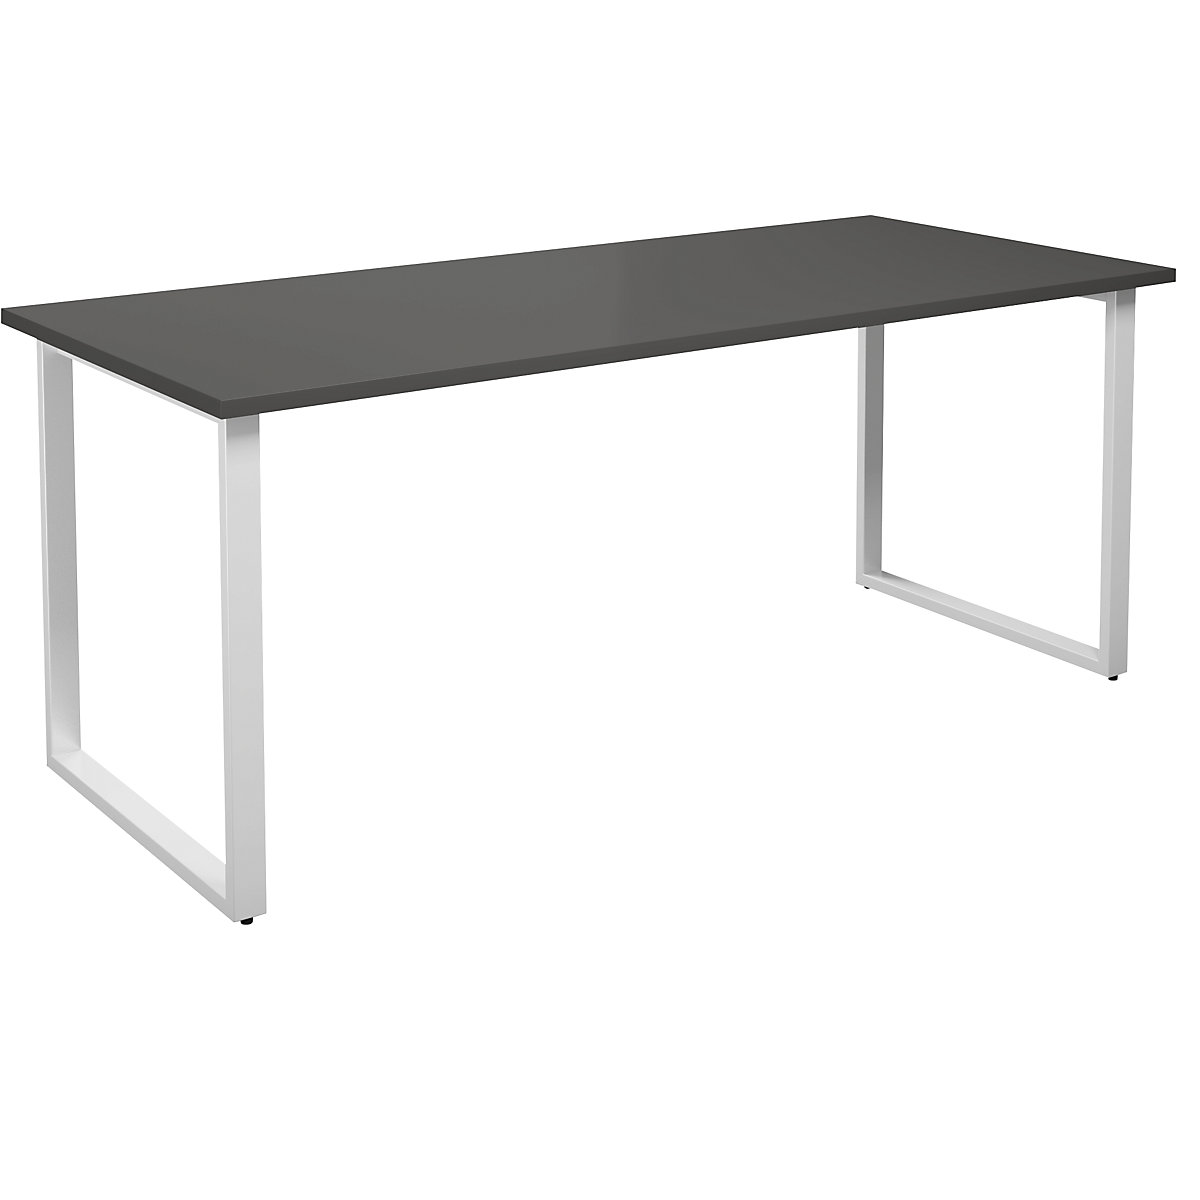 DUO-O multi-purpose desk, straight tabletop, WxD 1800 x 800 mm, dark grey, white-13